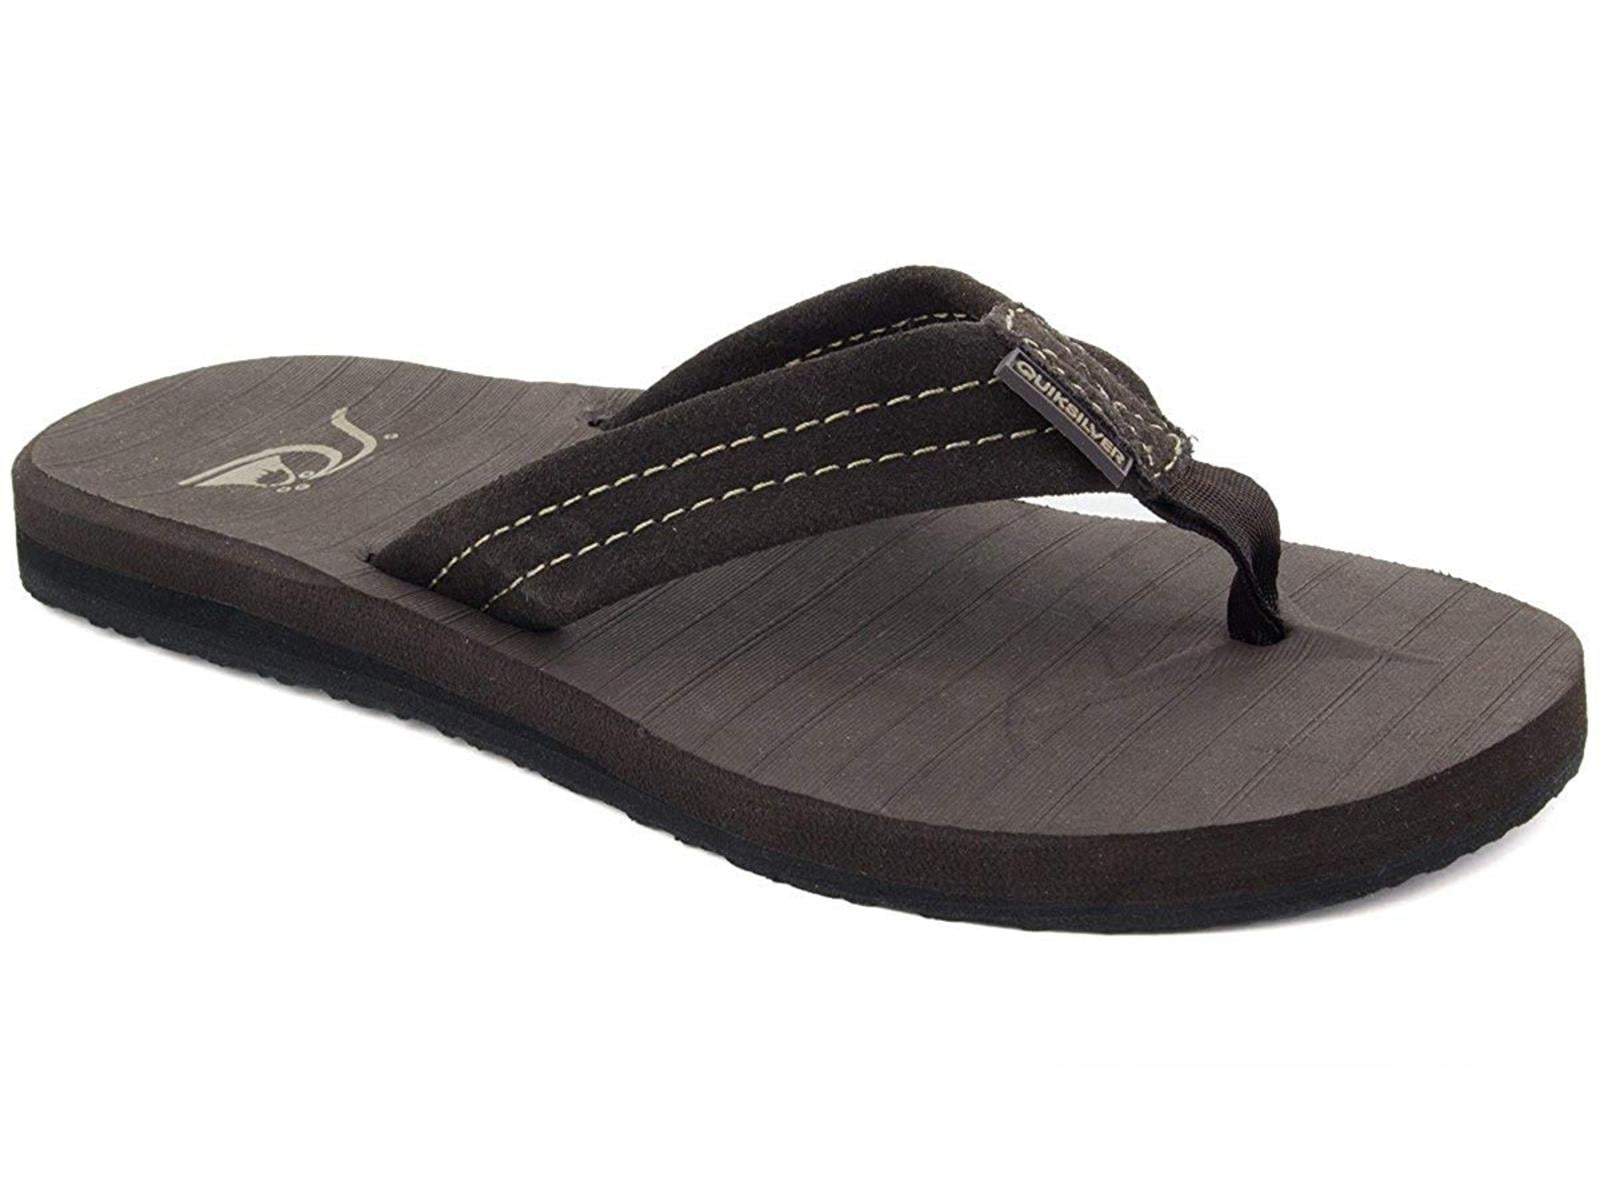 Quiksilver Men's Haleiwa Plus Sandals - Walmart.com